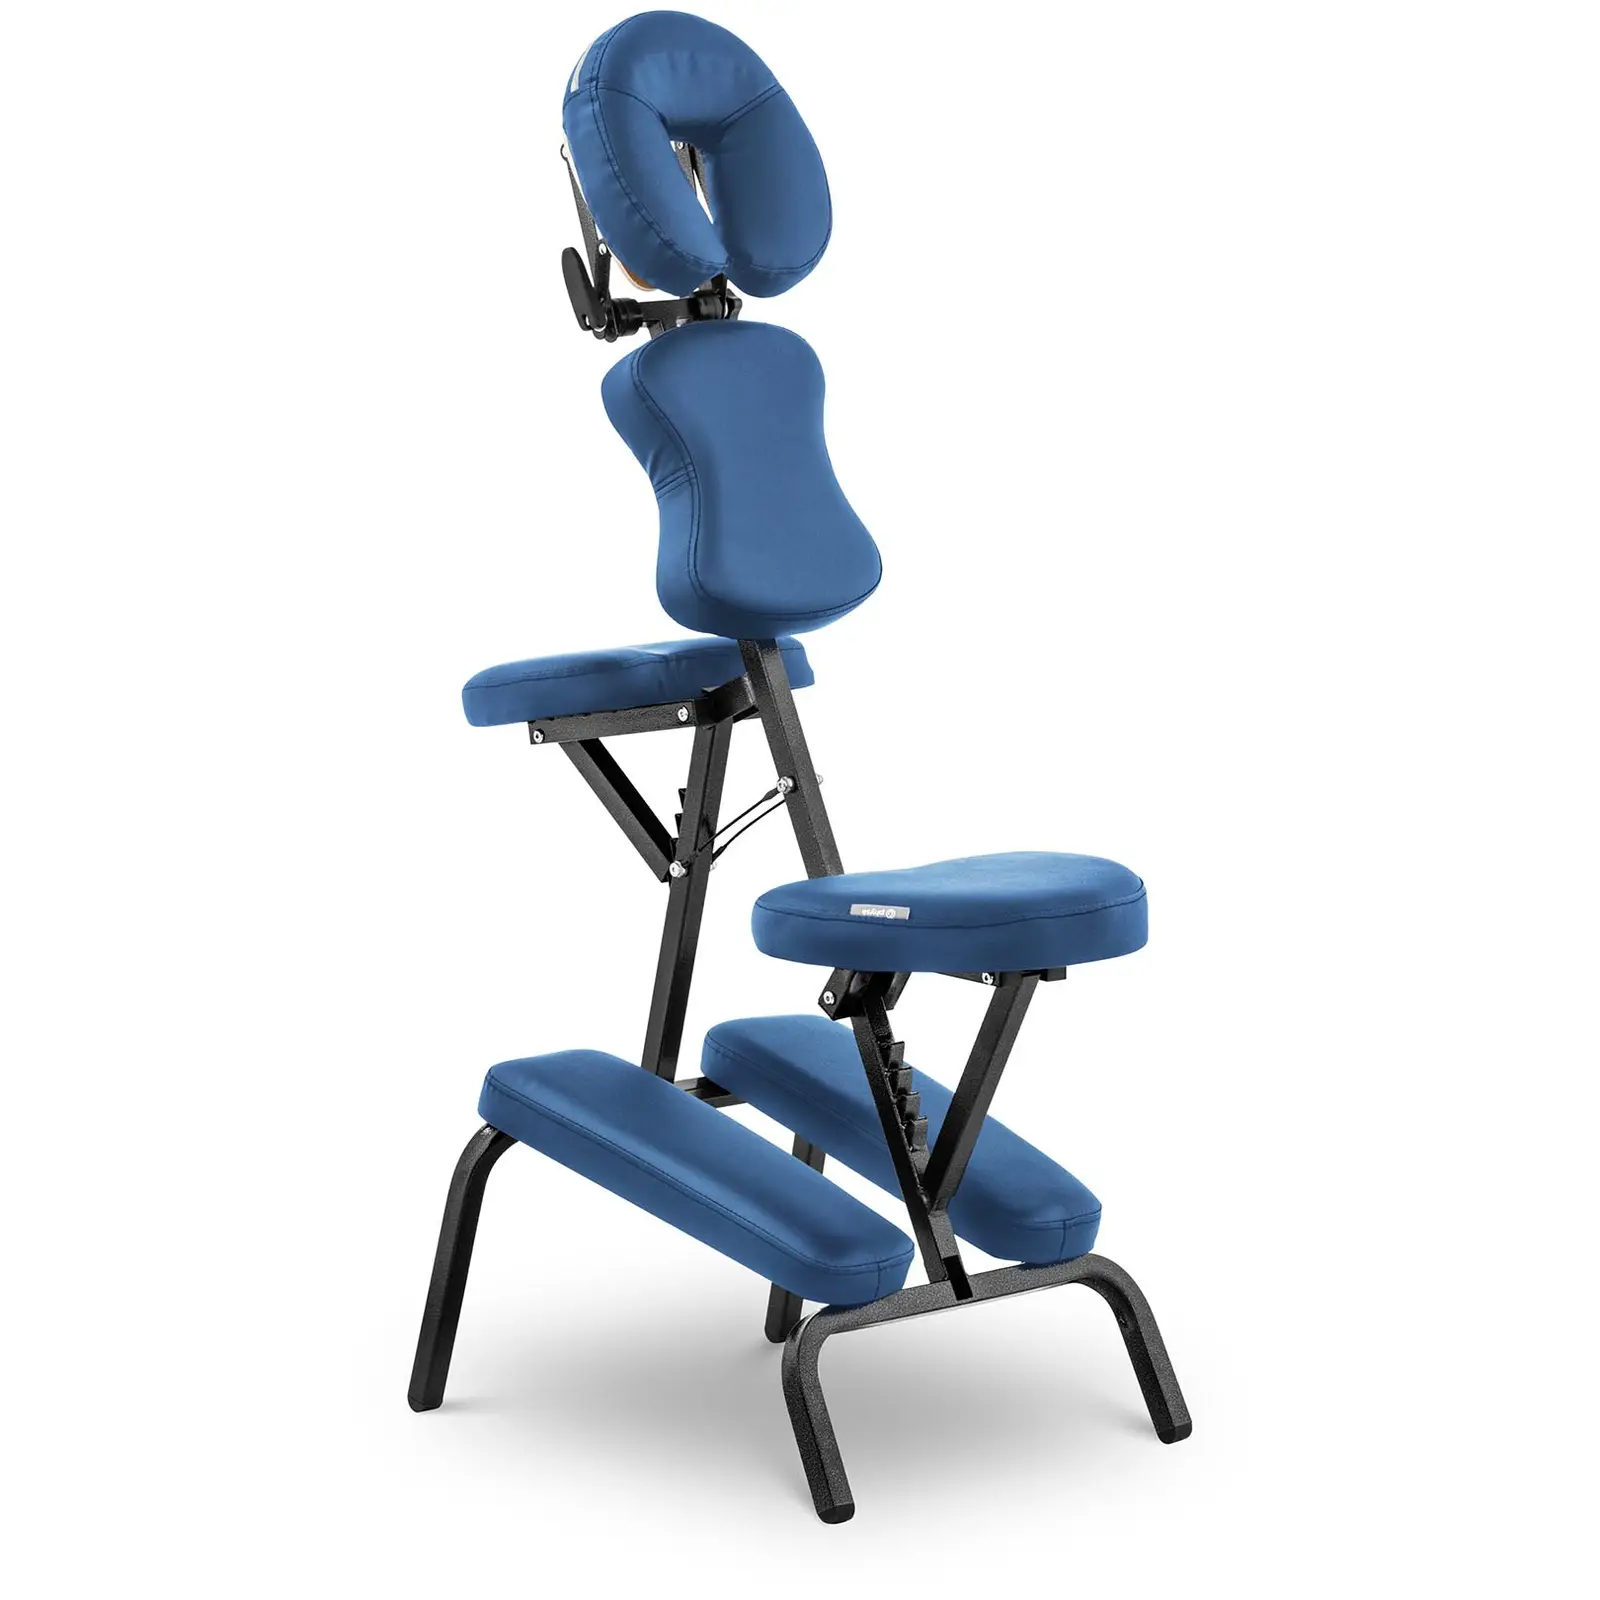 Sammenleggbart massasjestol - 130 kg - Blå